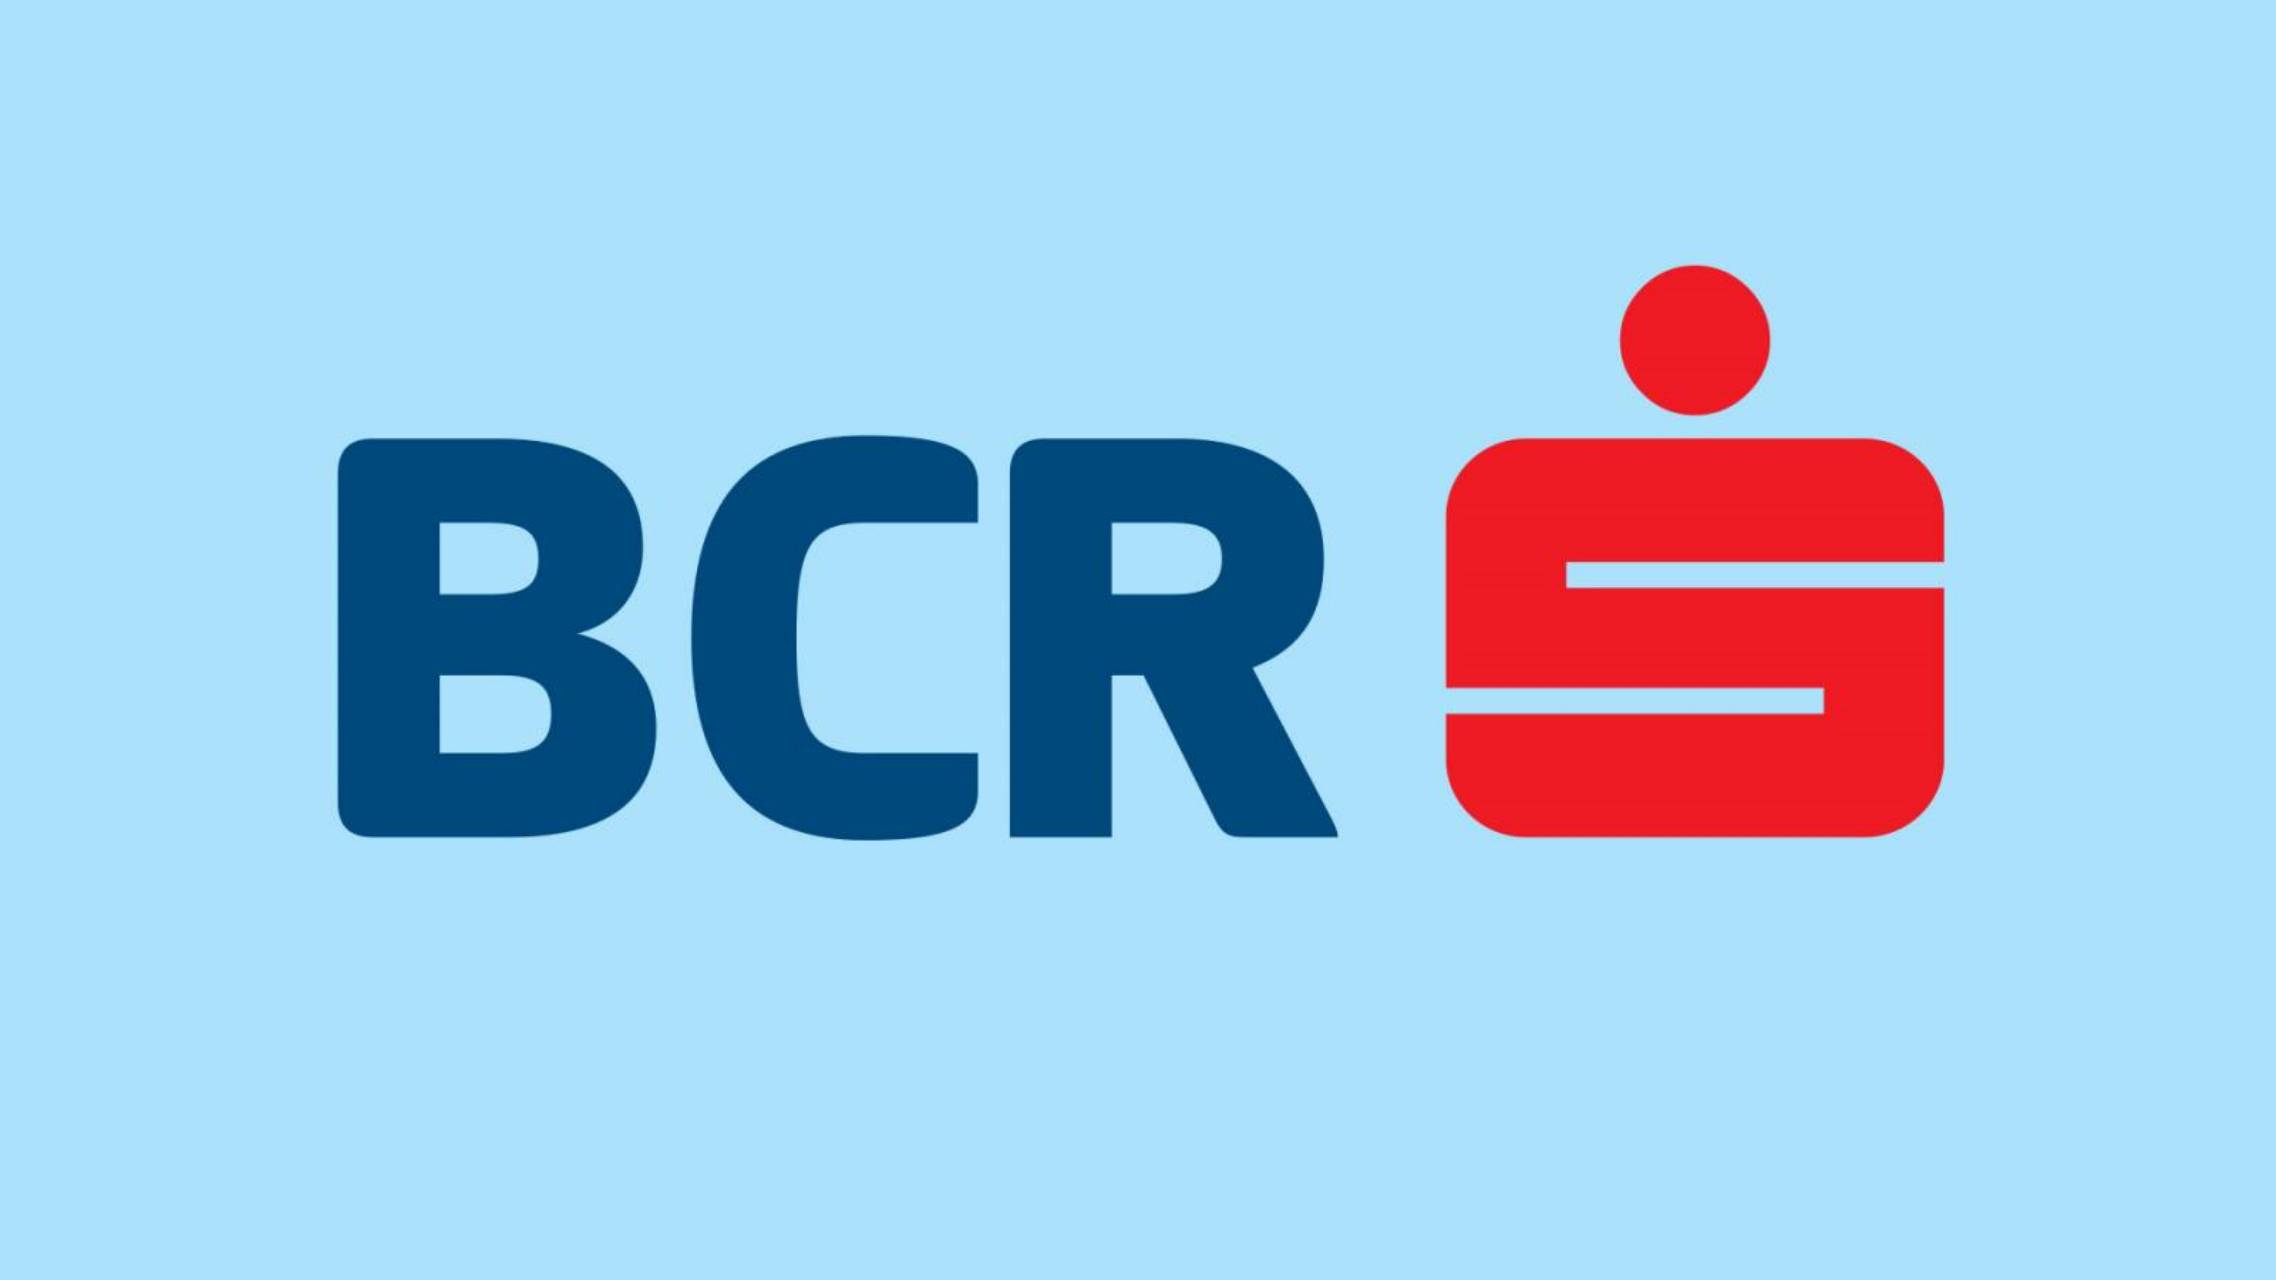 BCR Rumania restringido